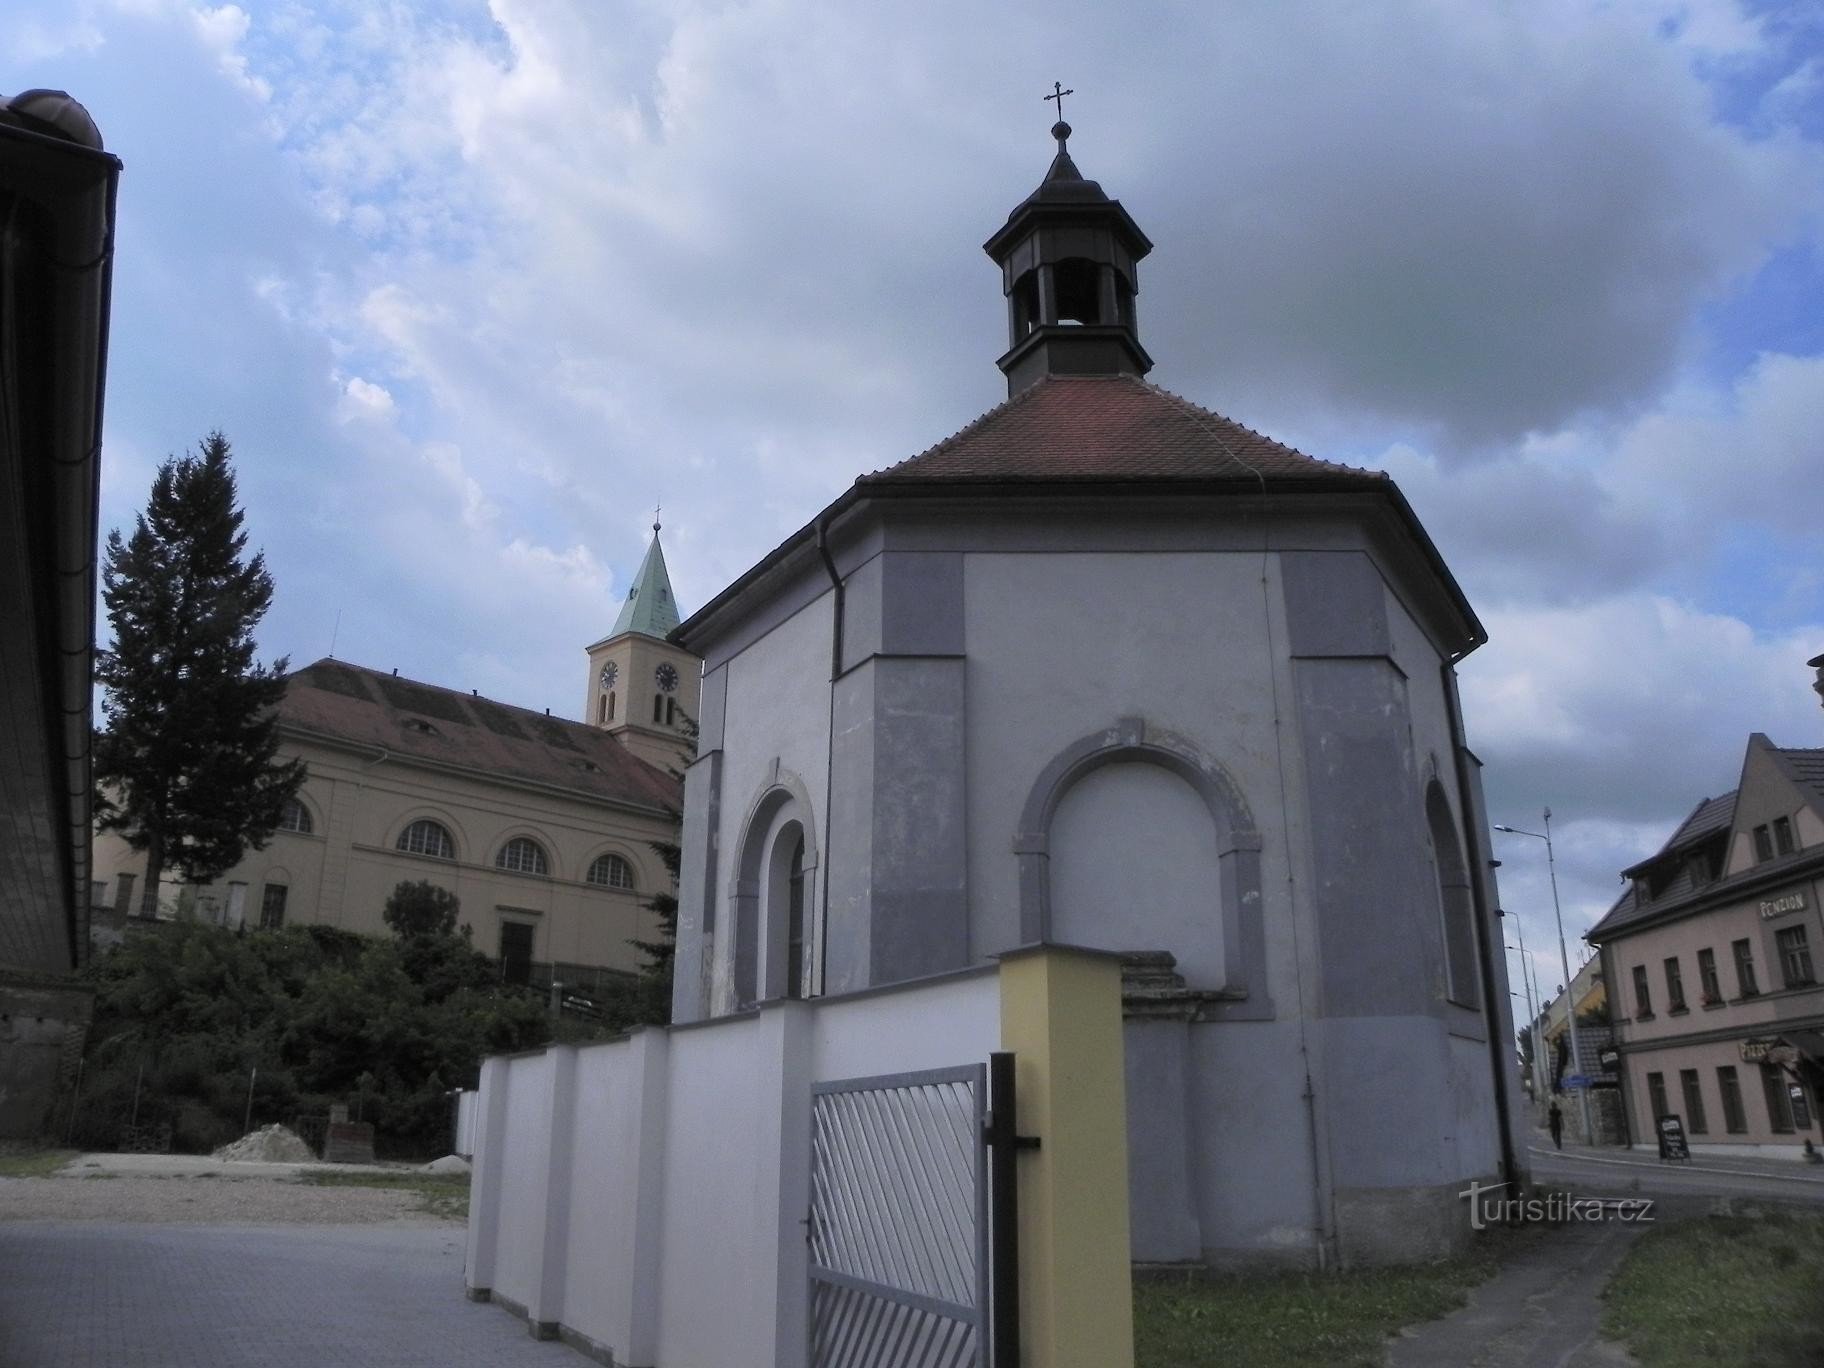 Stod, église et chapelle St. Venceslas